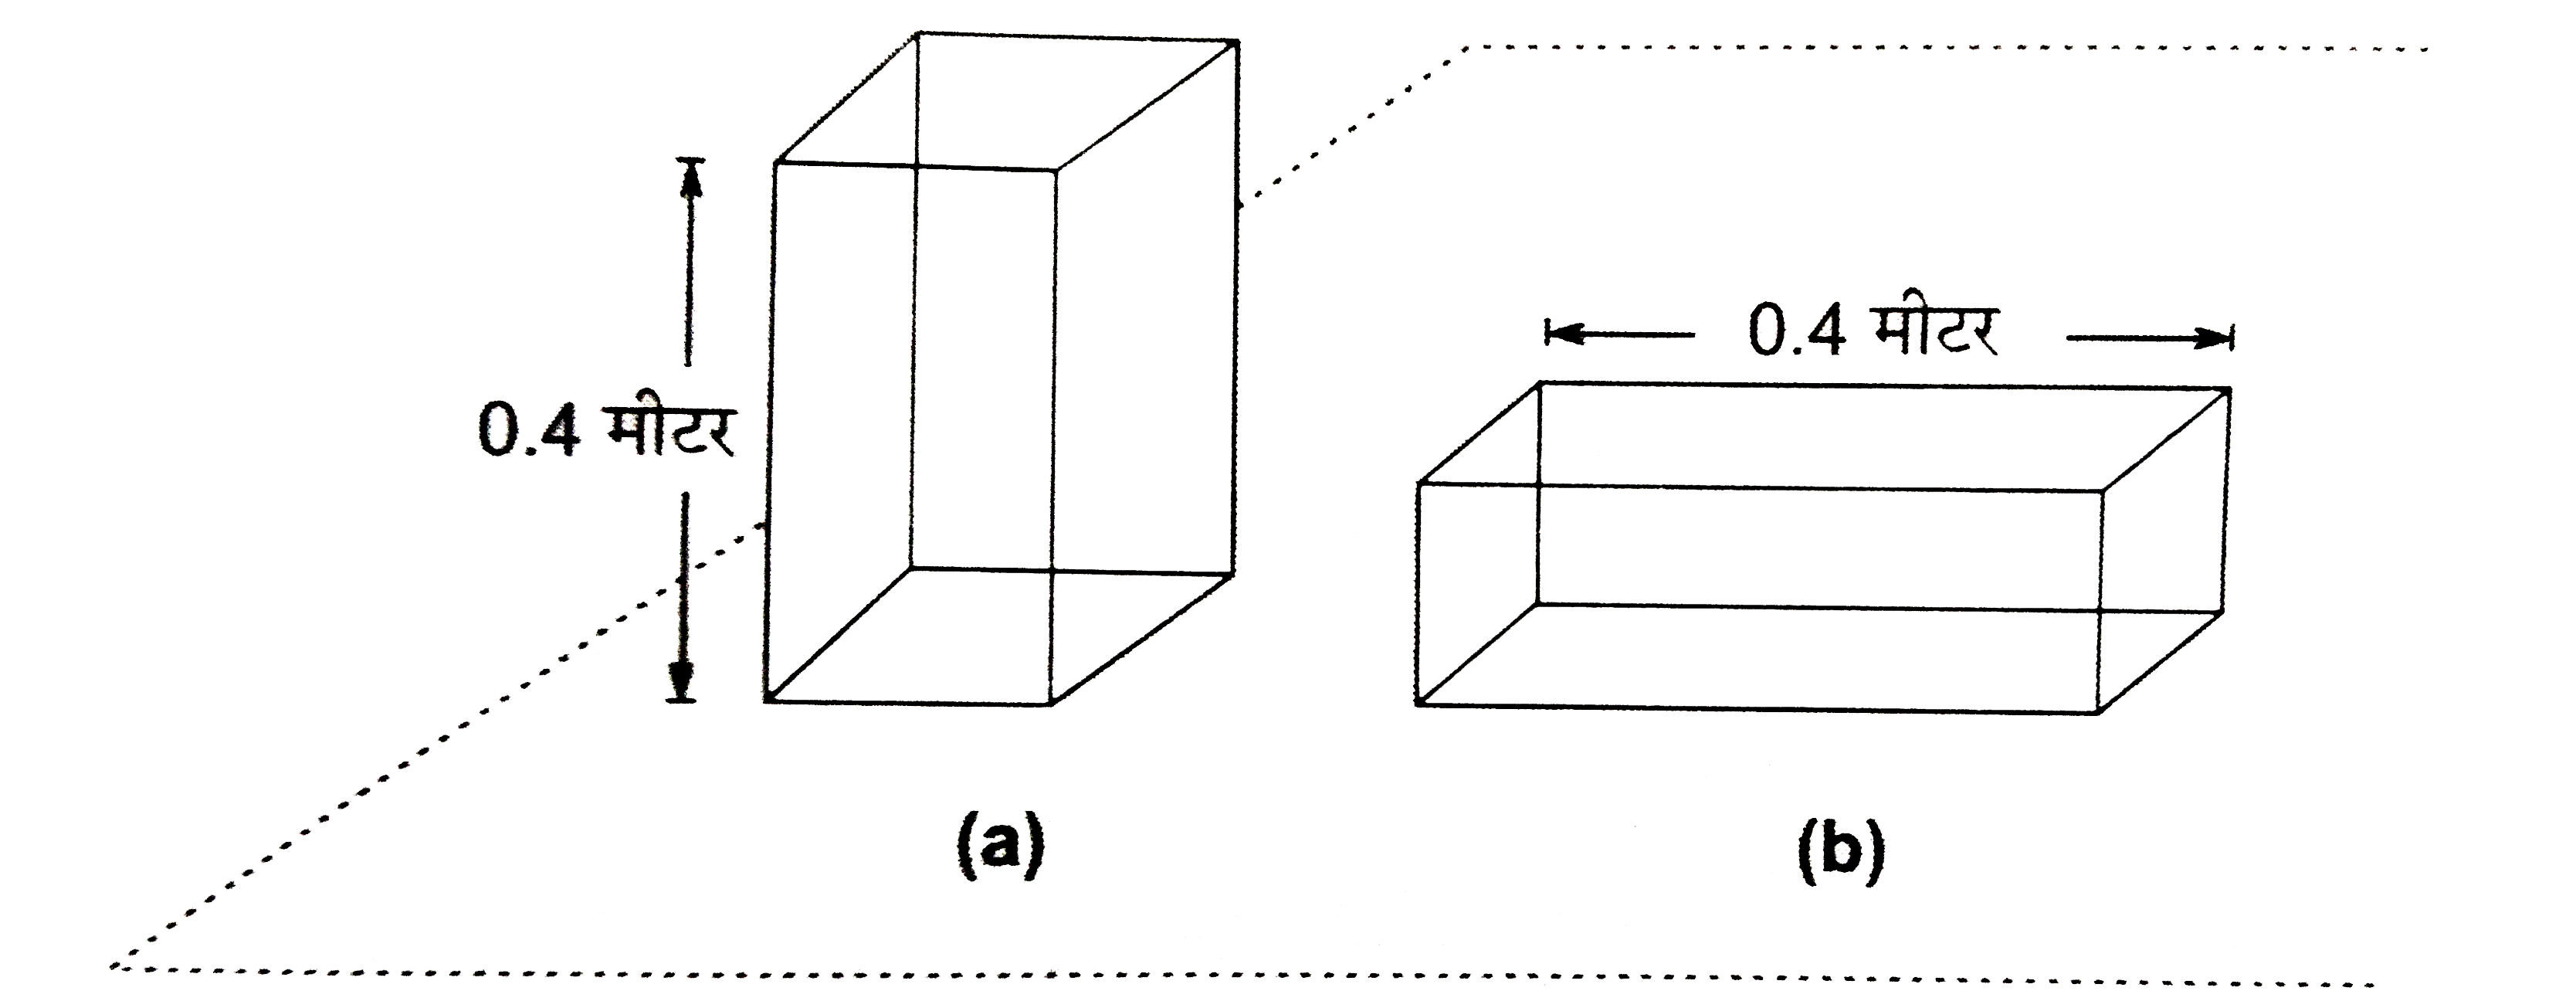 धातु के एक टुकड़े की विमा 0.4 मीटर xx 0.1 xx 0.1 मीटर है टुकड़े का भर 100 न्यूटन है यह टुकड़ा एक क्षैतिज ताल पर पहले 15.21 (a) के अनुसार तथा बाद में चित्र 15.21 (b) के अनुसार रखा जाता है प्रत्येक स्थिति में टुकड़े द्वारा तल पर आरोपित दाब क्या है